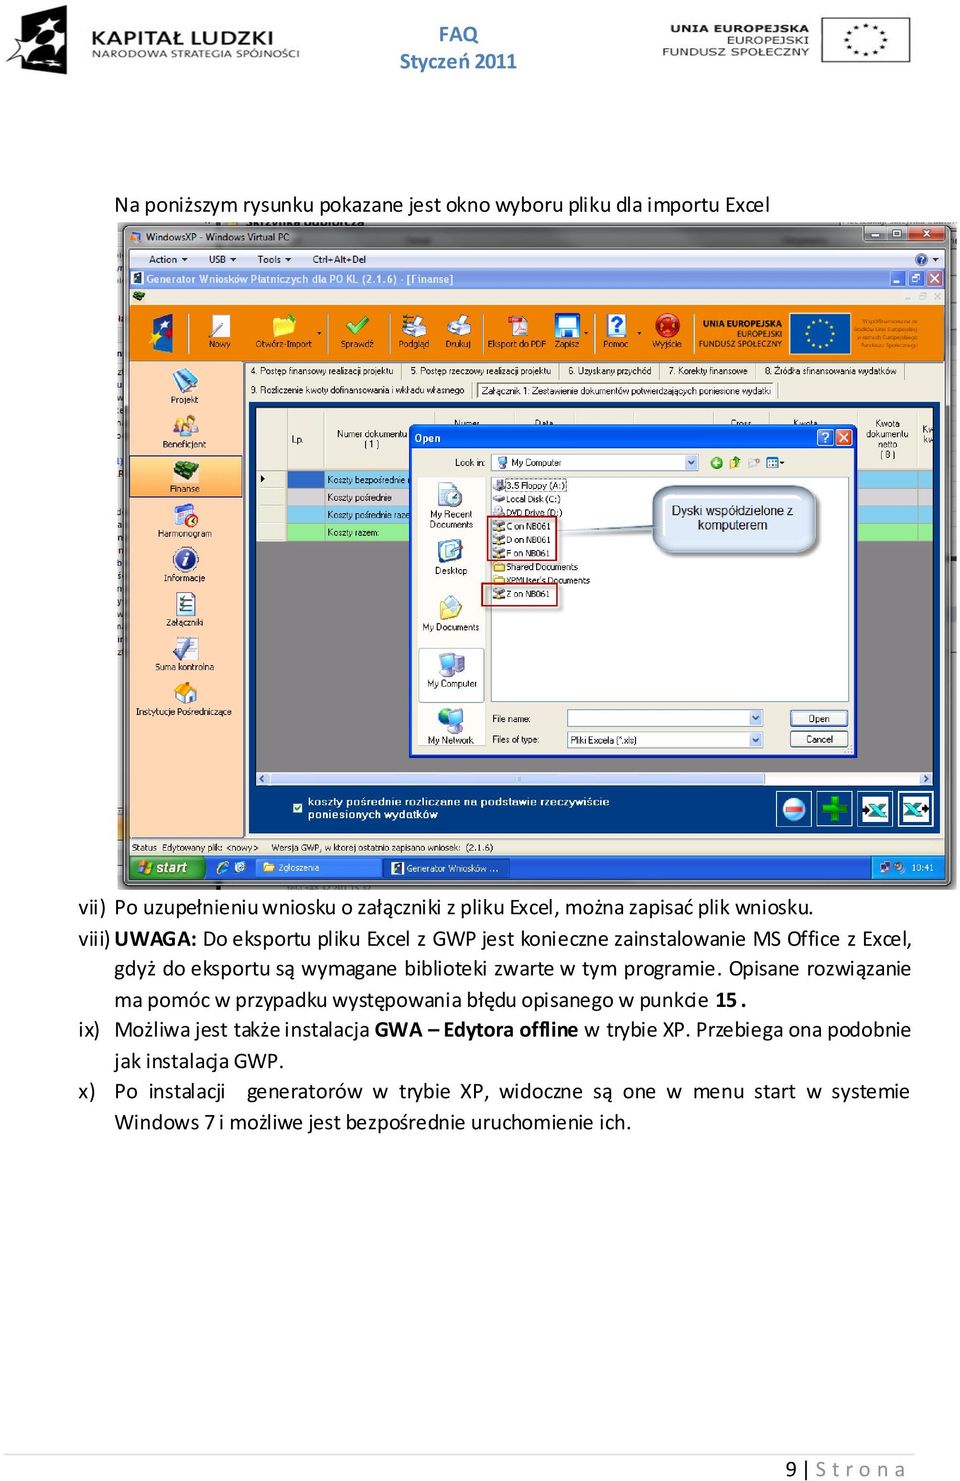 Opisane rozwiązanie ma pomóc w przypadku występowania błędu opisanego w punkcie 15. ix) Możliwa jest także instalacja GWA Edytora offline w trybie XP.